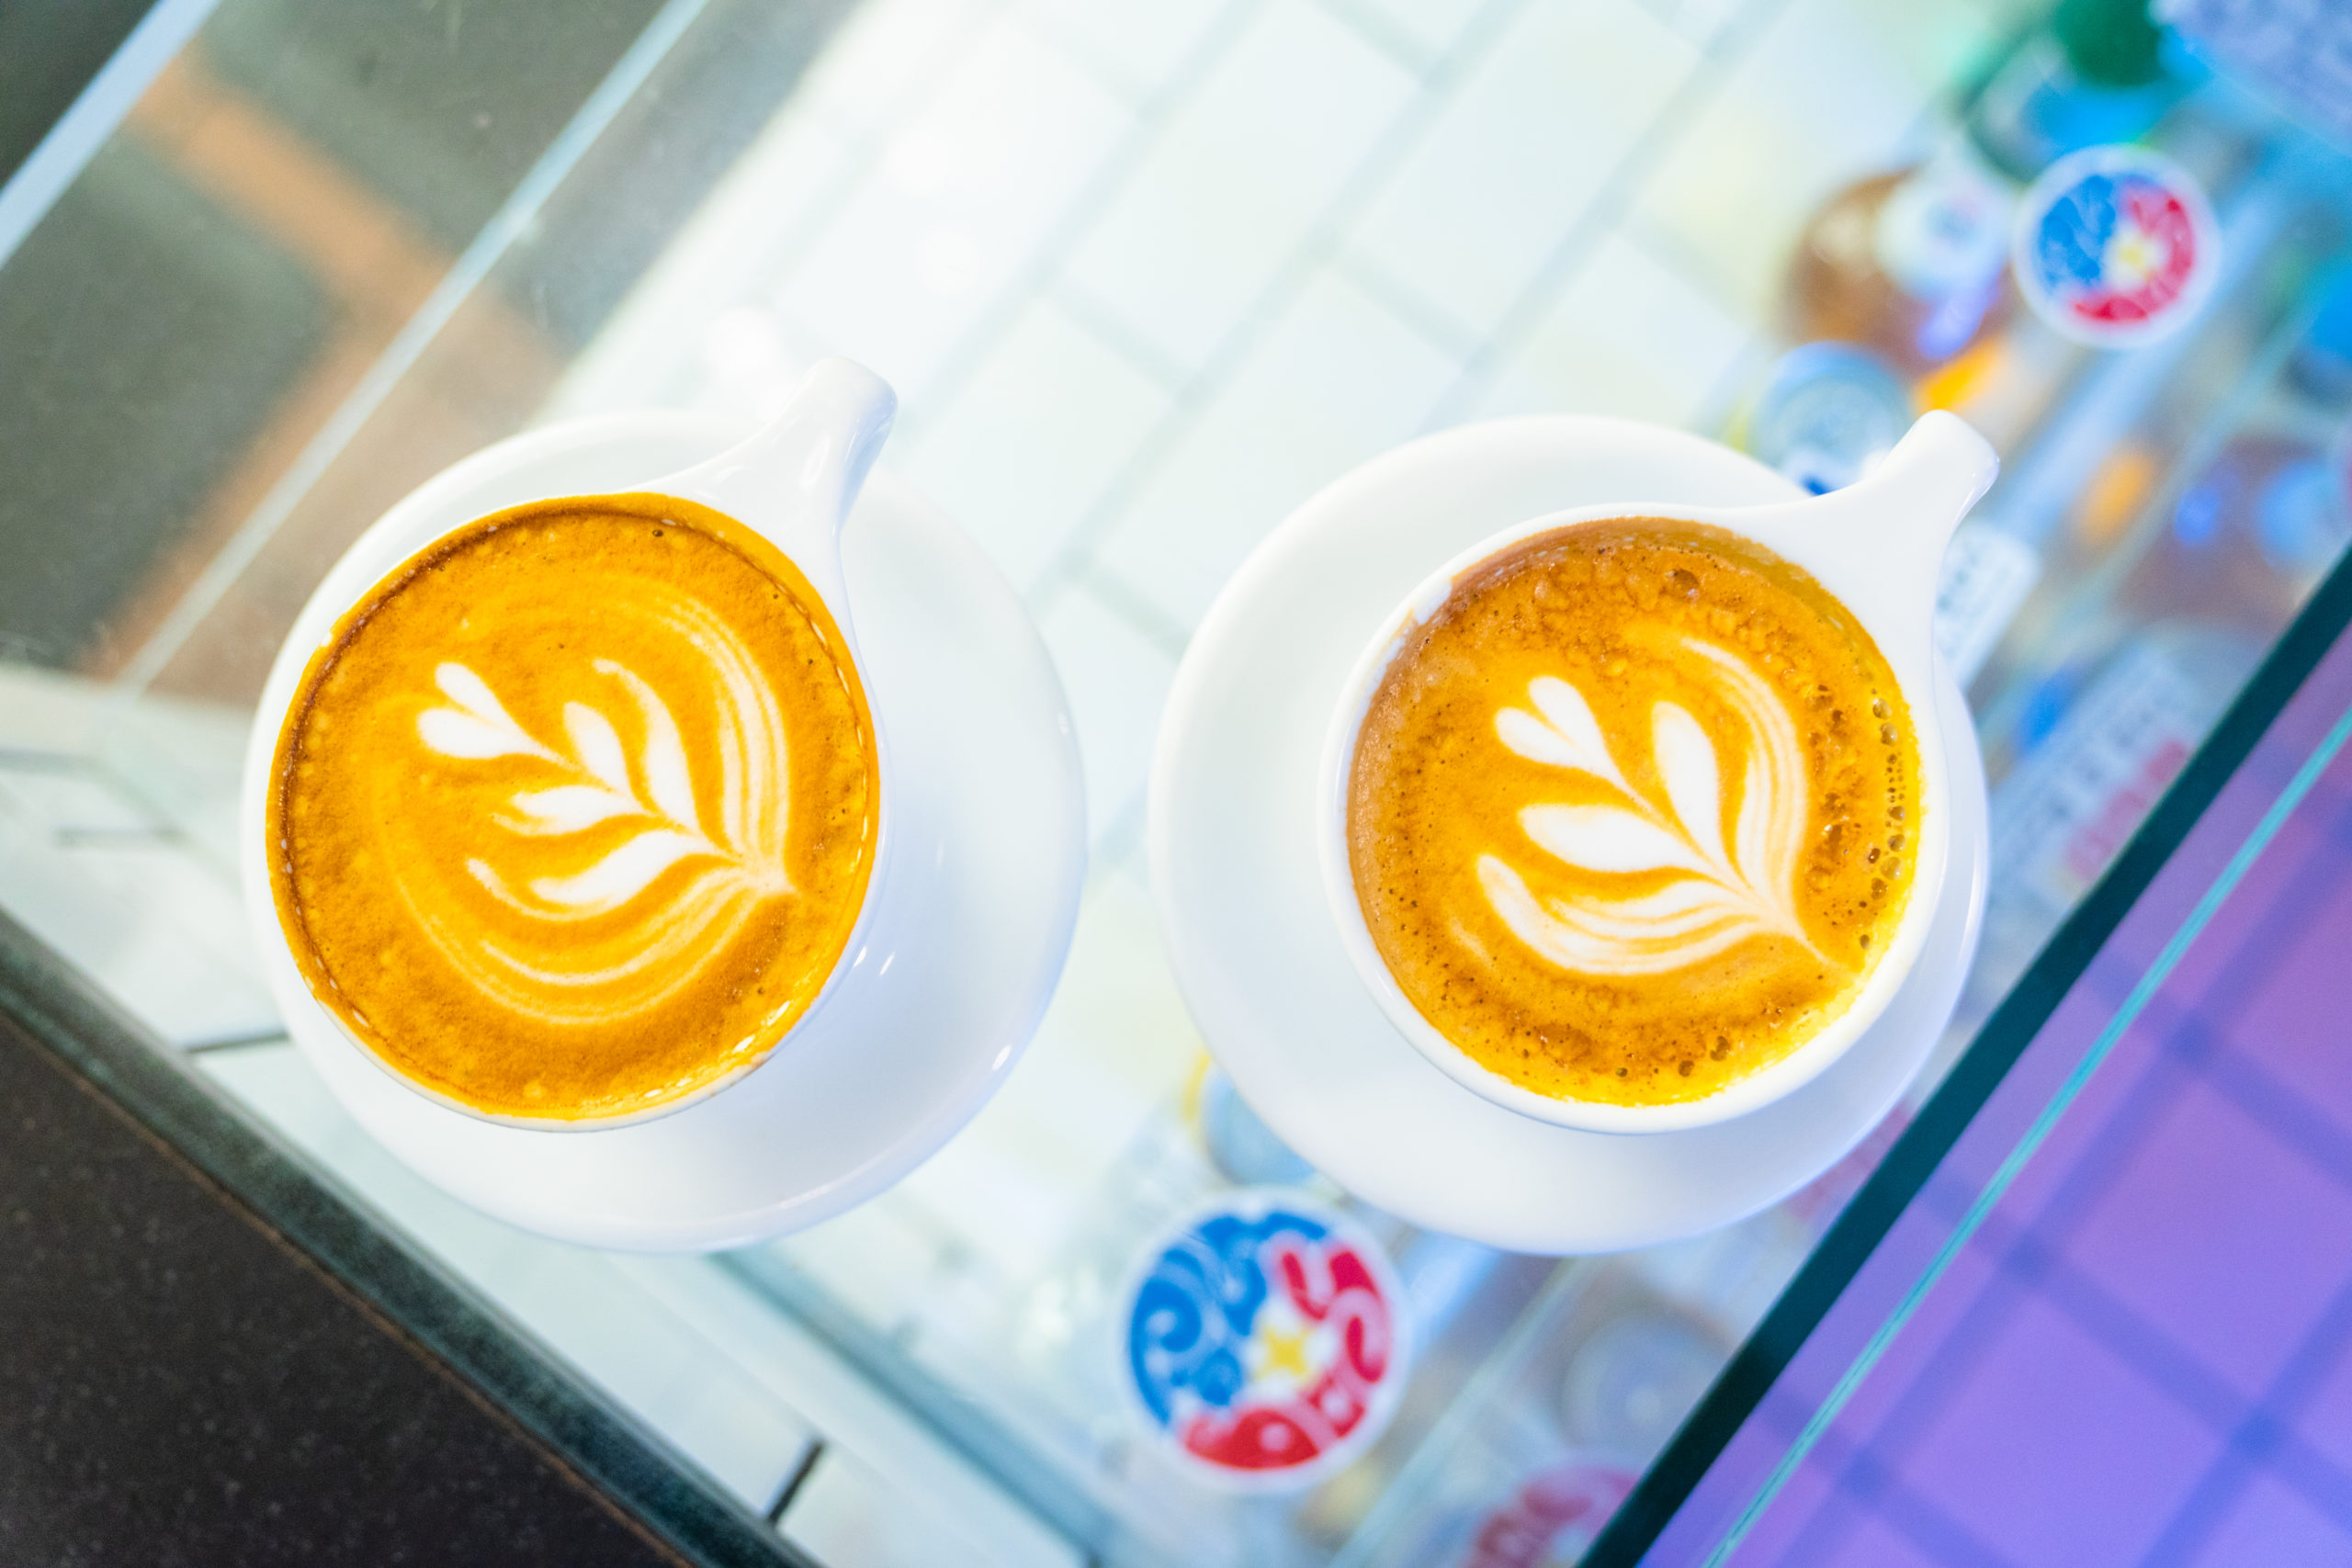 Ventura’s Ten Best Coffee Shops